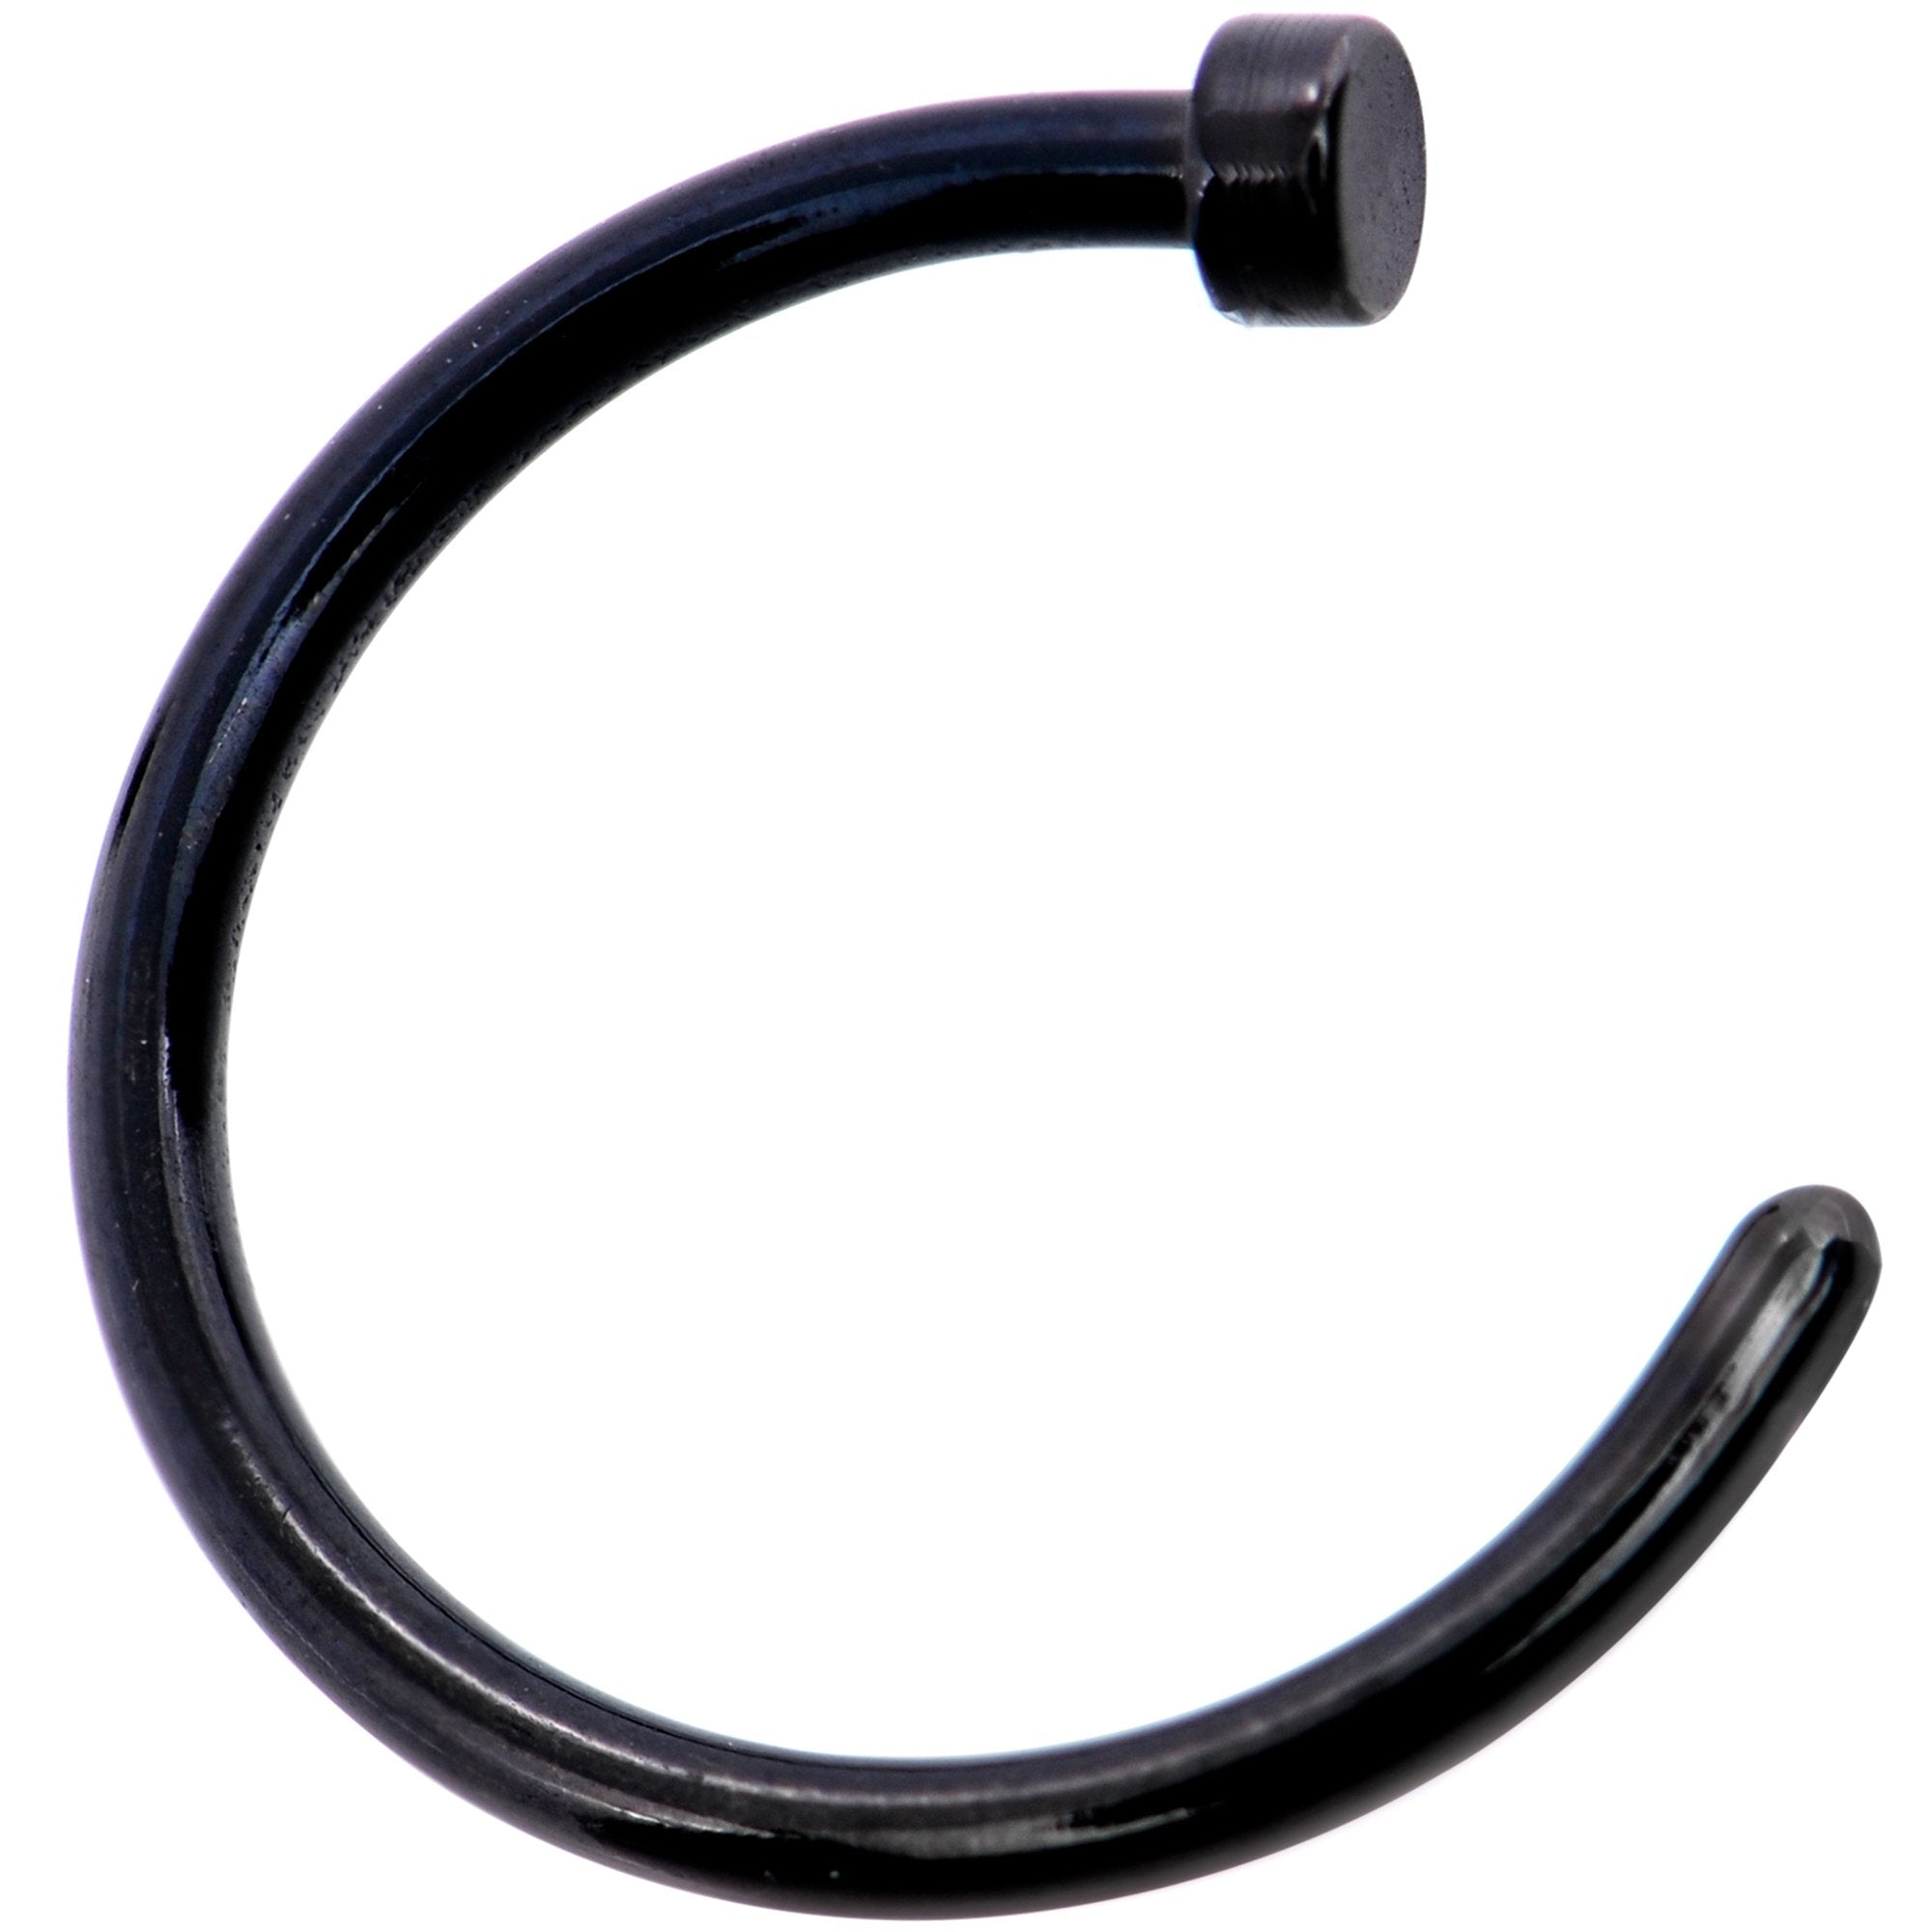 18 Gauge 3/8 Pack Set of 3 Assorted Stainless Steel Nose Hoop Rings